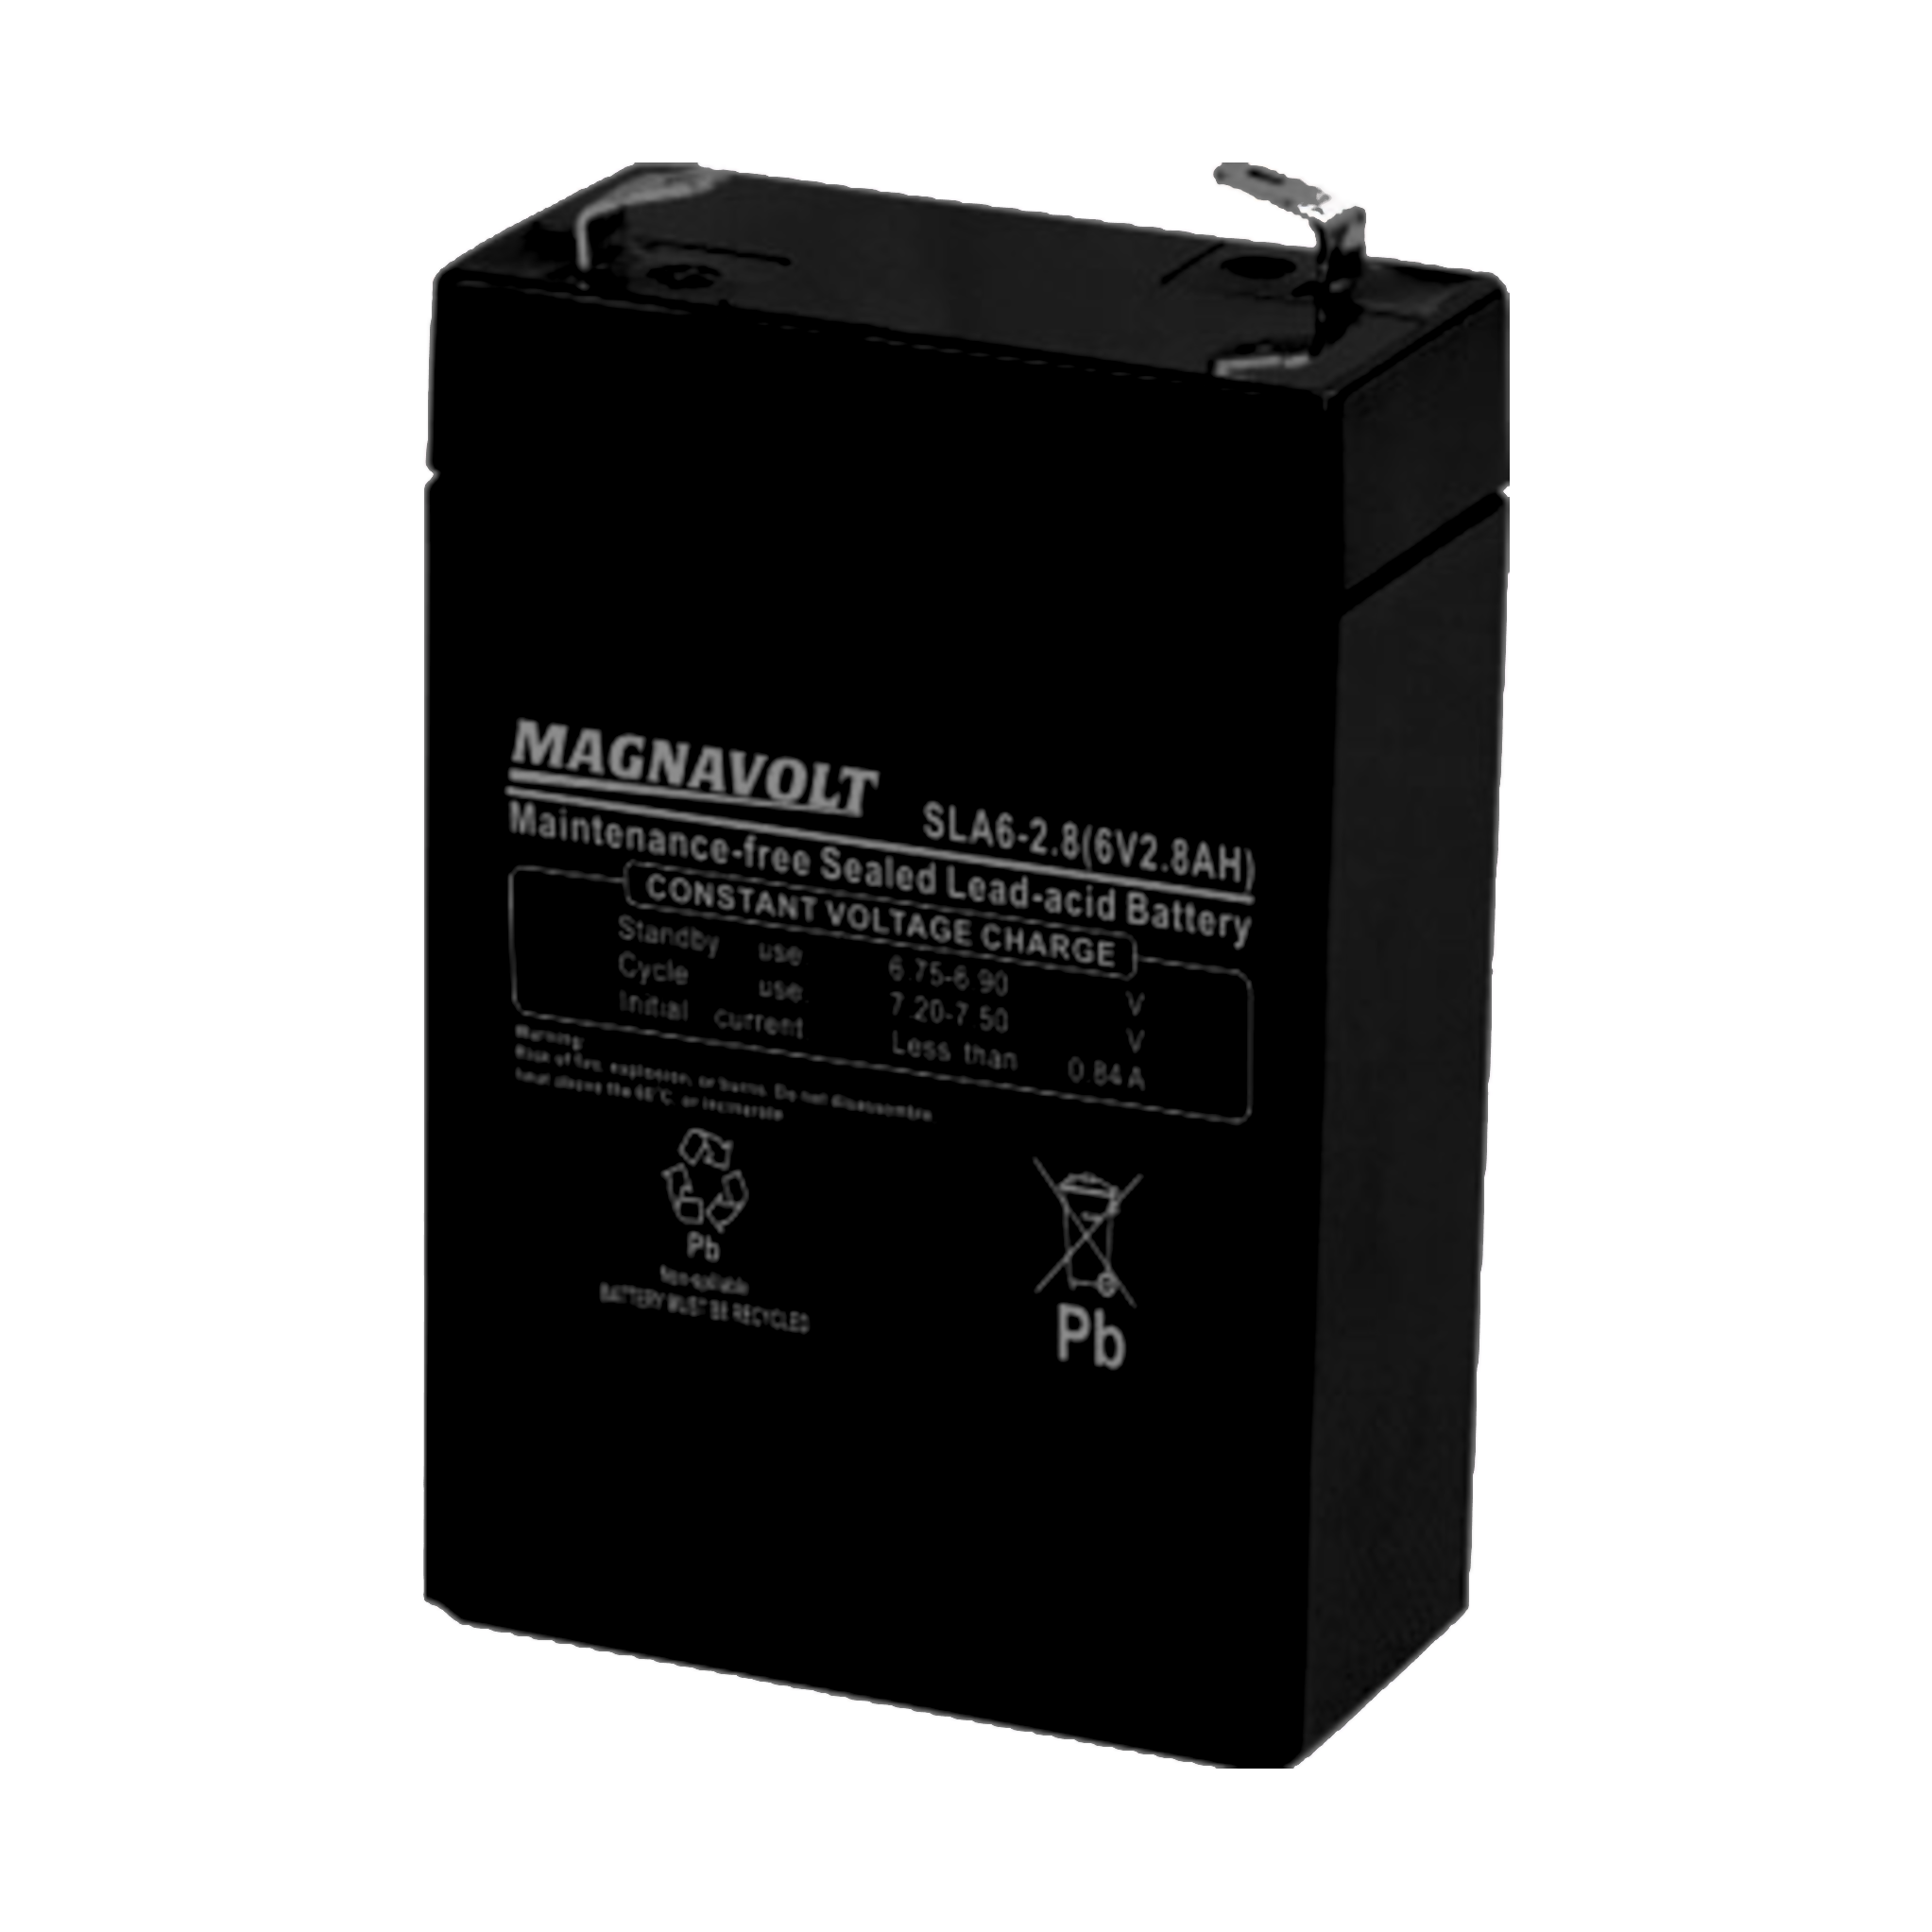 Magnavolt SLA6-2.8 6V 2.8Ah Sealed Lead Acid SLA Battery